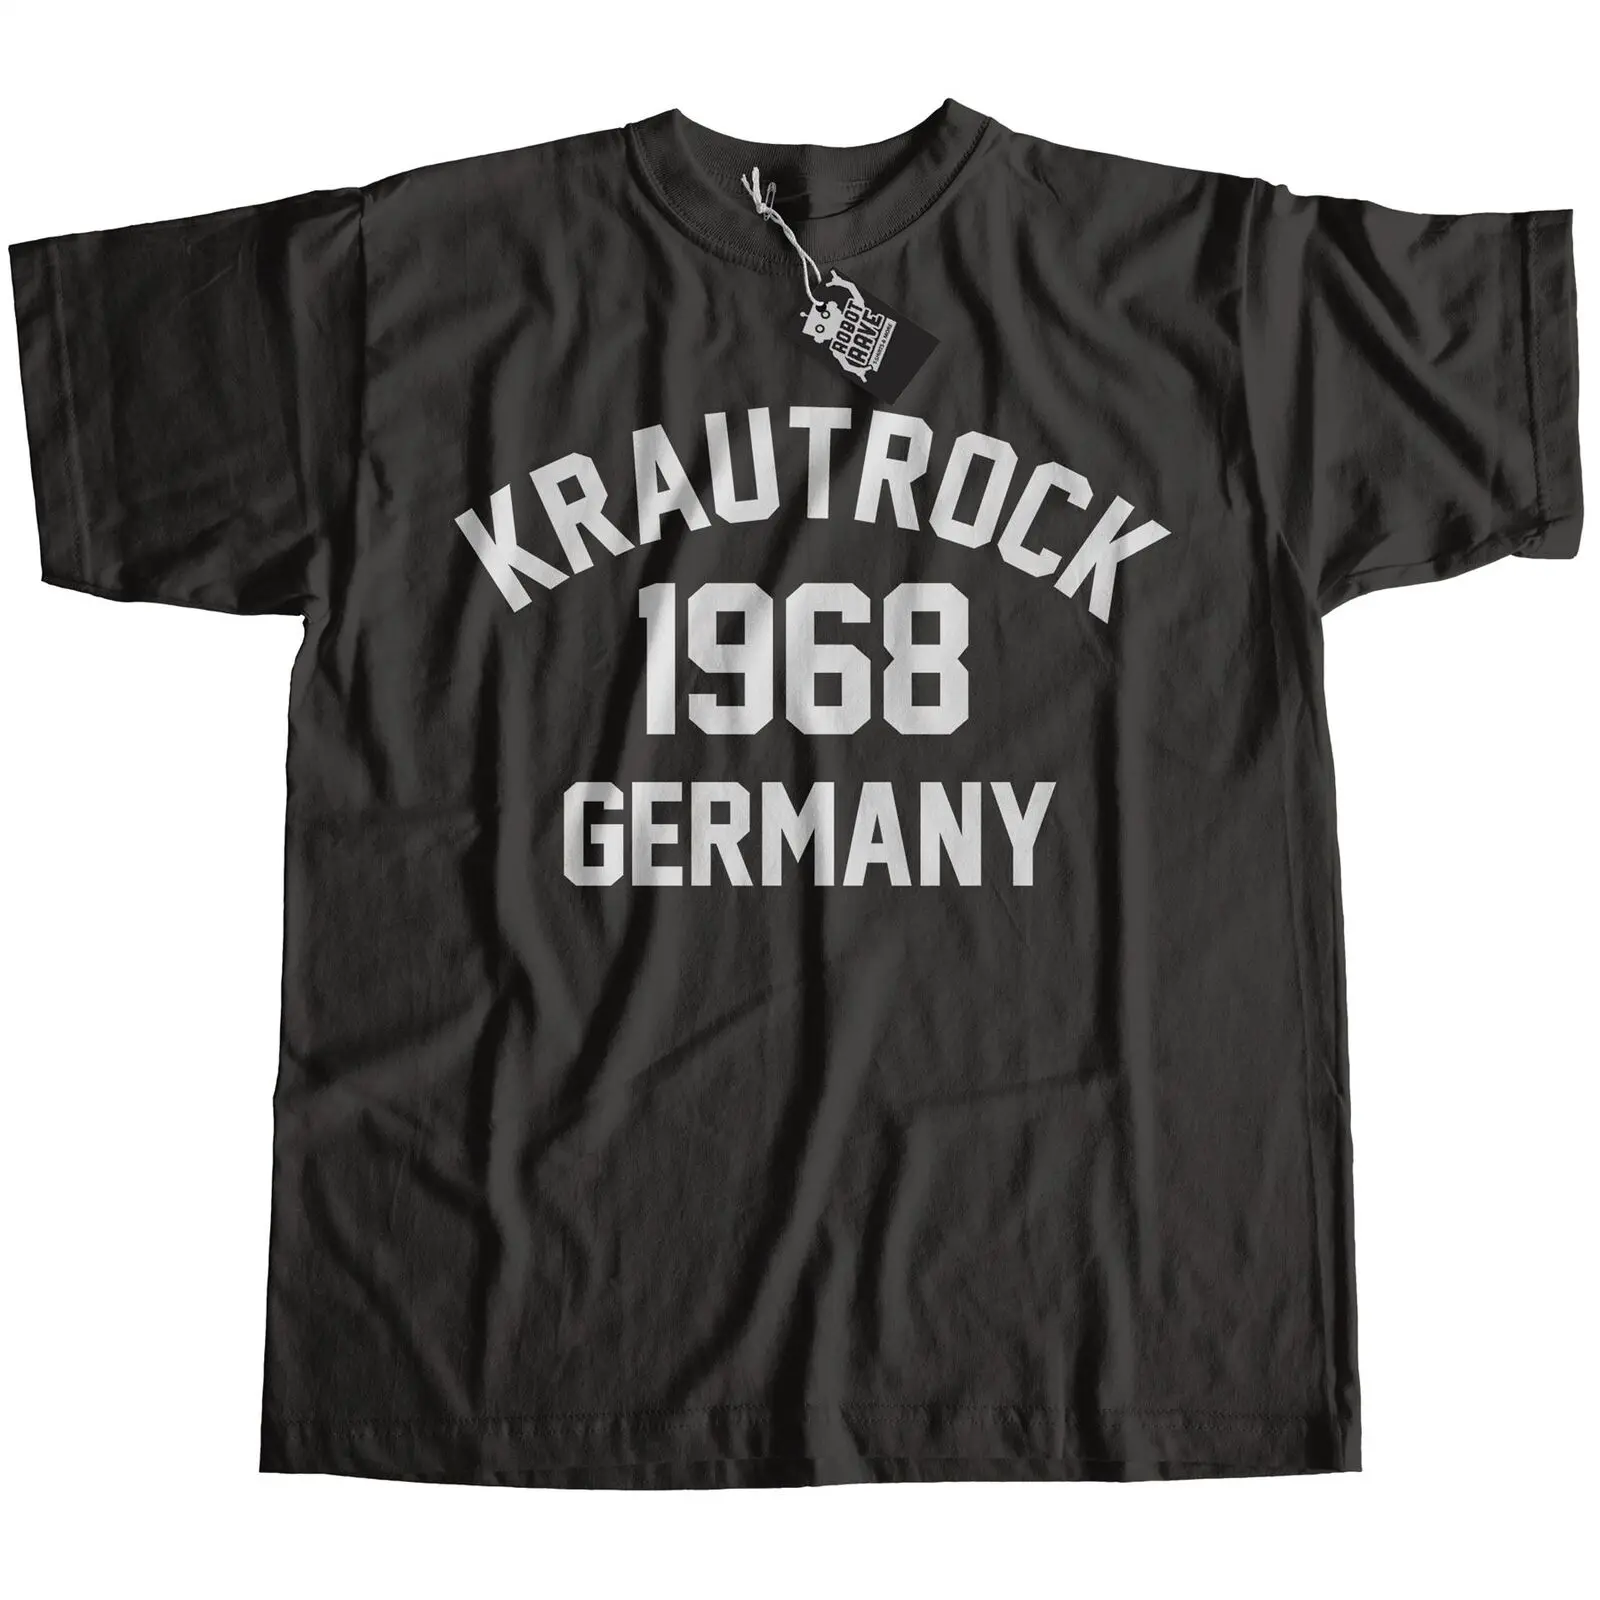 Krautrock 1968 Футболка 100% хлопок высокого качества Neu Tangerine Dream